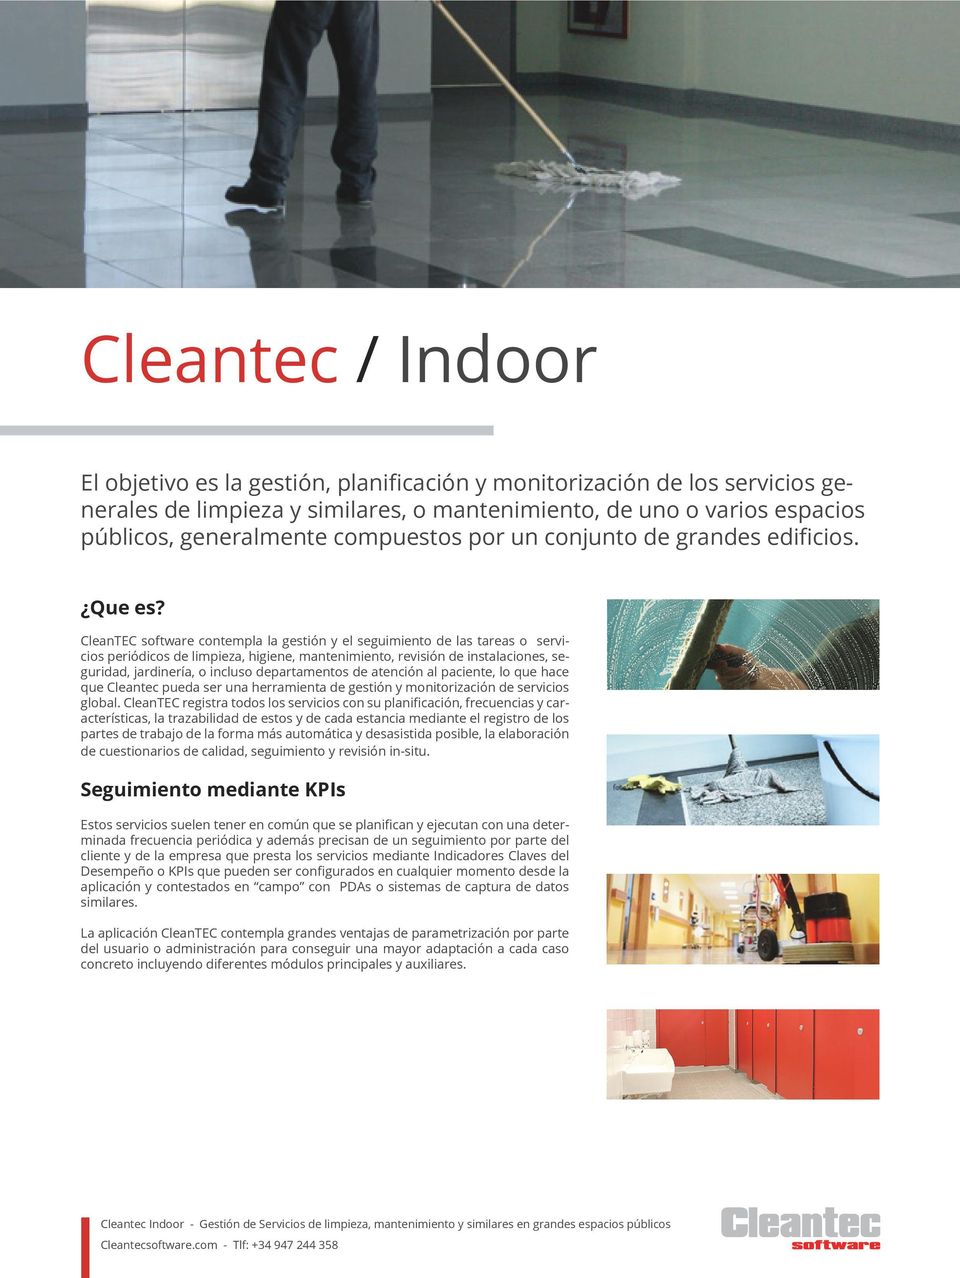 CleanTEC software contempla la gestión y el seguimiento de las tareas o servicios periódicos de limpieza, higiene, mantenimiento, revisión de instalaciones, seguridad, jardinería, o incluso